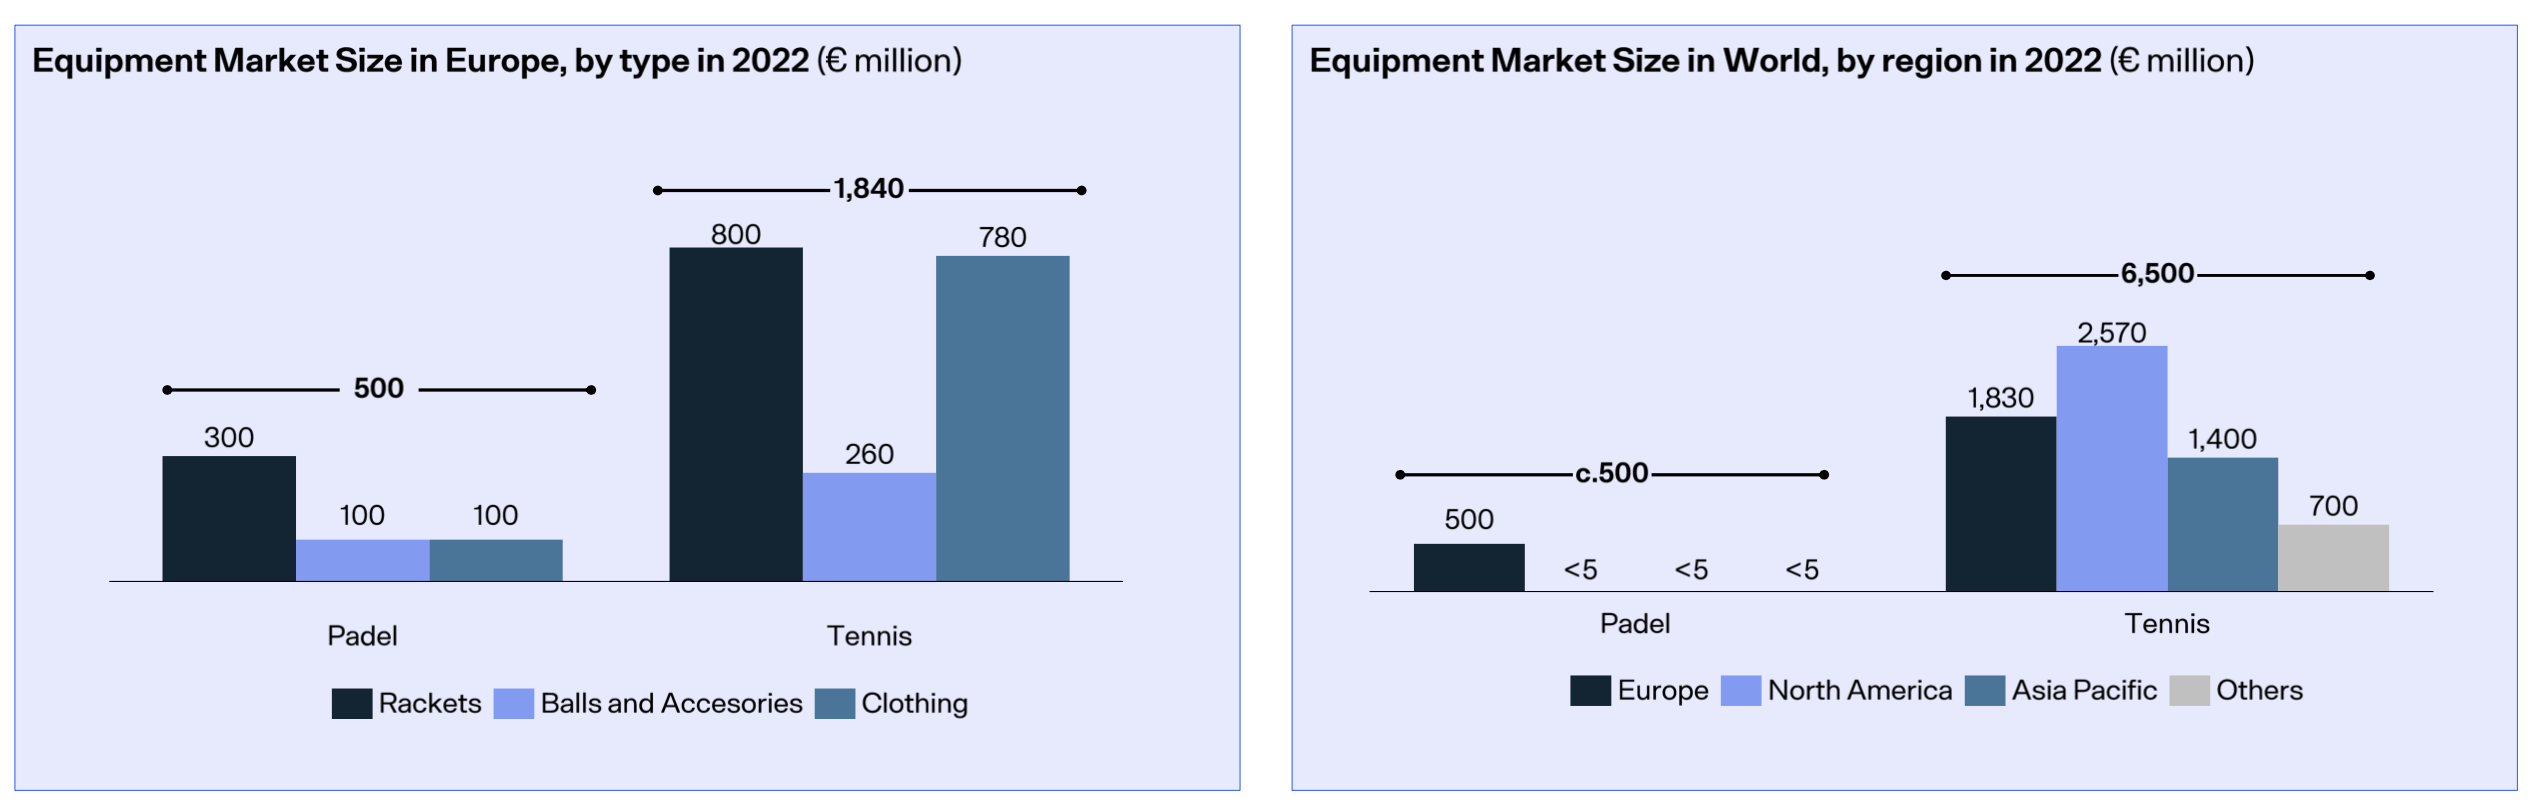 Comparaisaon marché de l'équipement padel/tennis